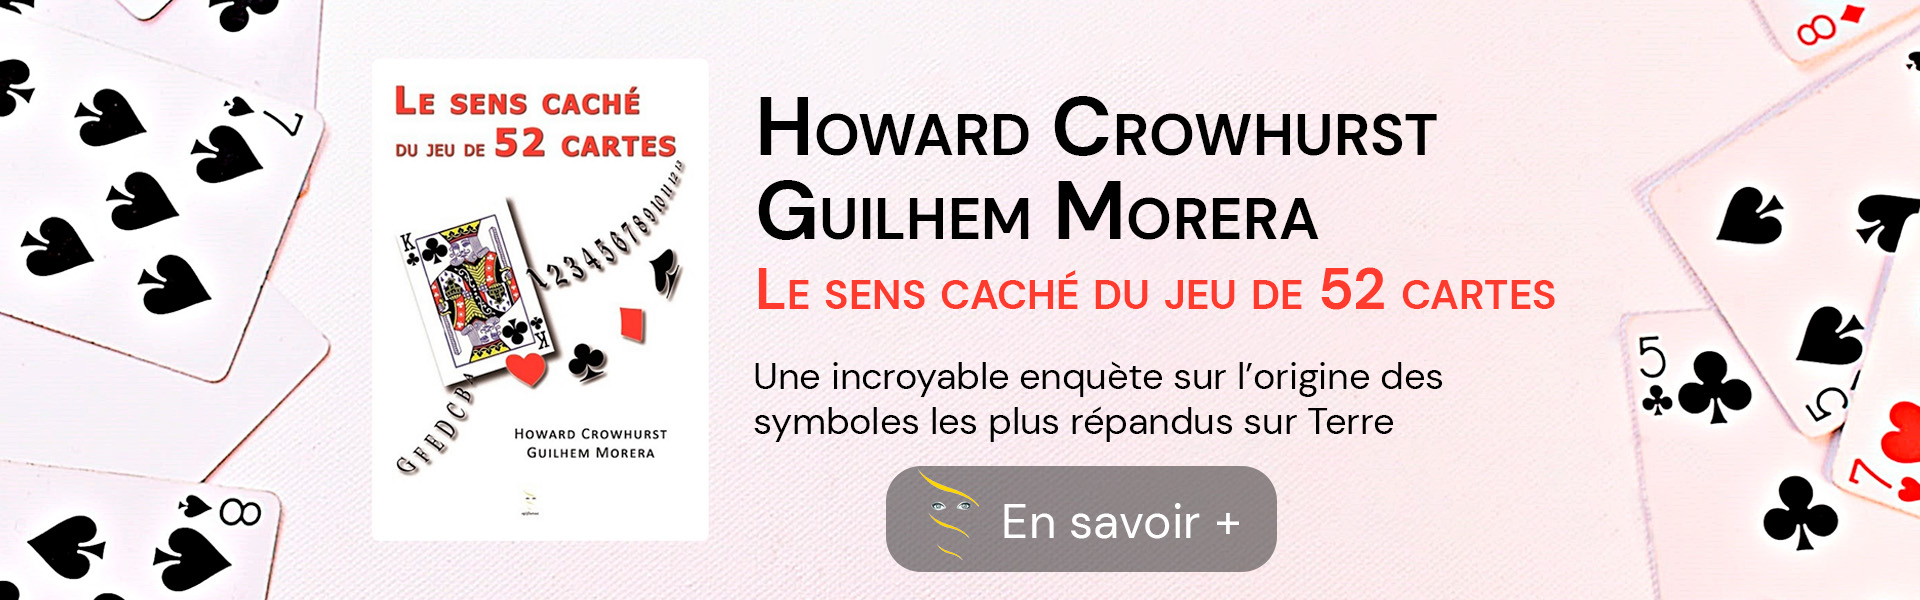 Présentation et couverture du livre de Howard Crowhurst et Guilhem Morera, le sens caché du jeu de 52 cartes